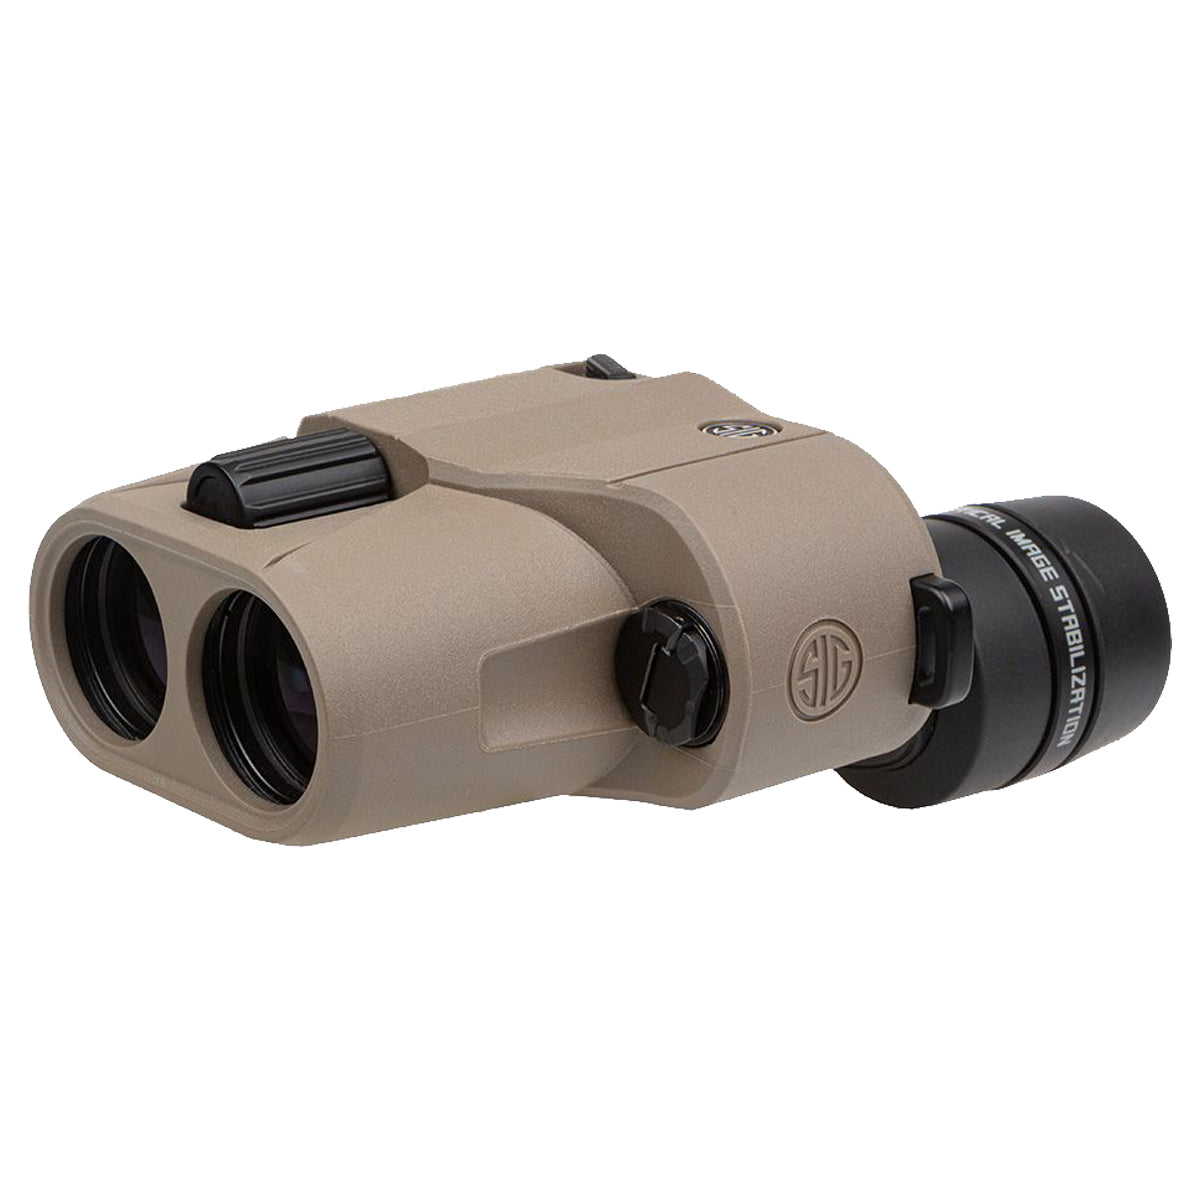 Sig Sauer ZULU6 HDX 10x30mm Image Stabilized Binocular in  by GOHUNT | Sig Sauer - GOHUNT Shop